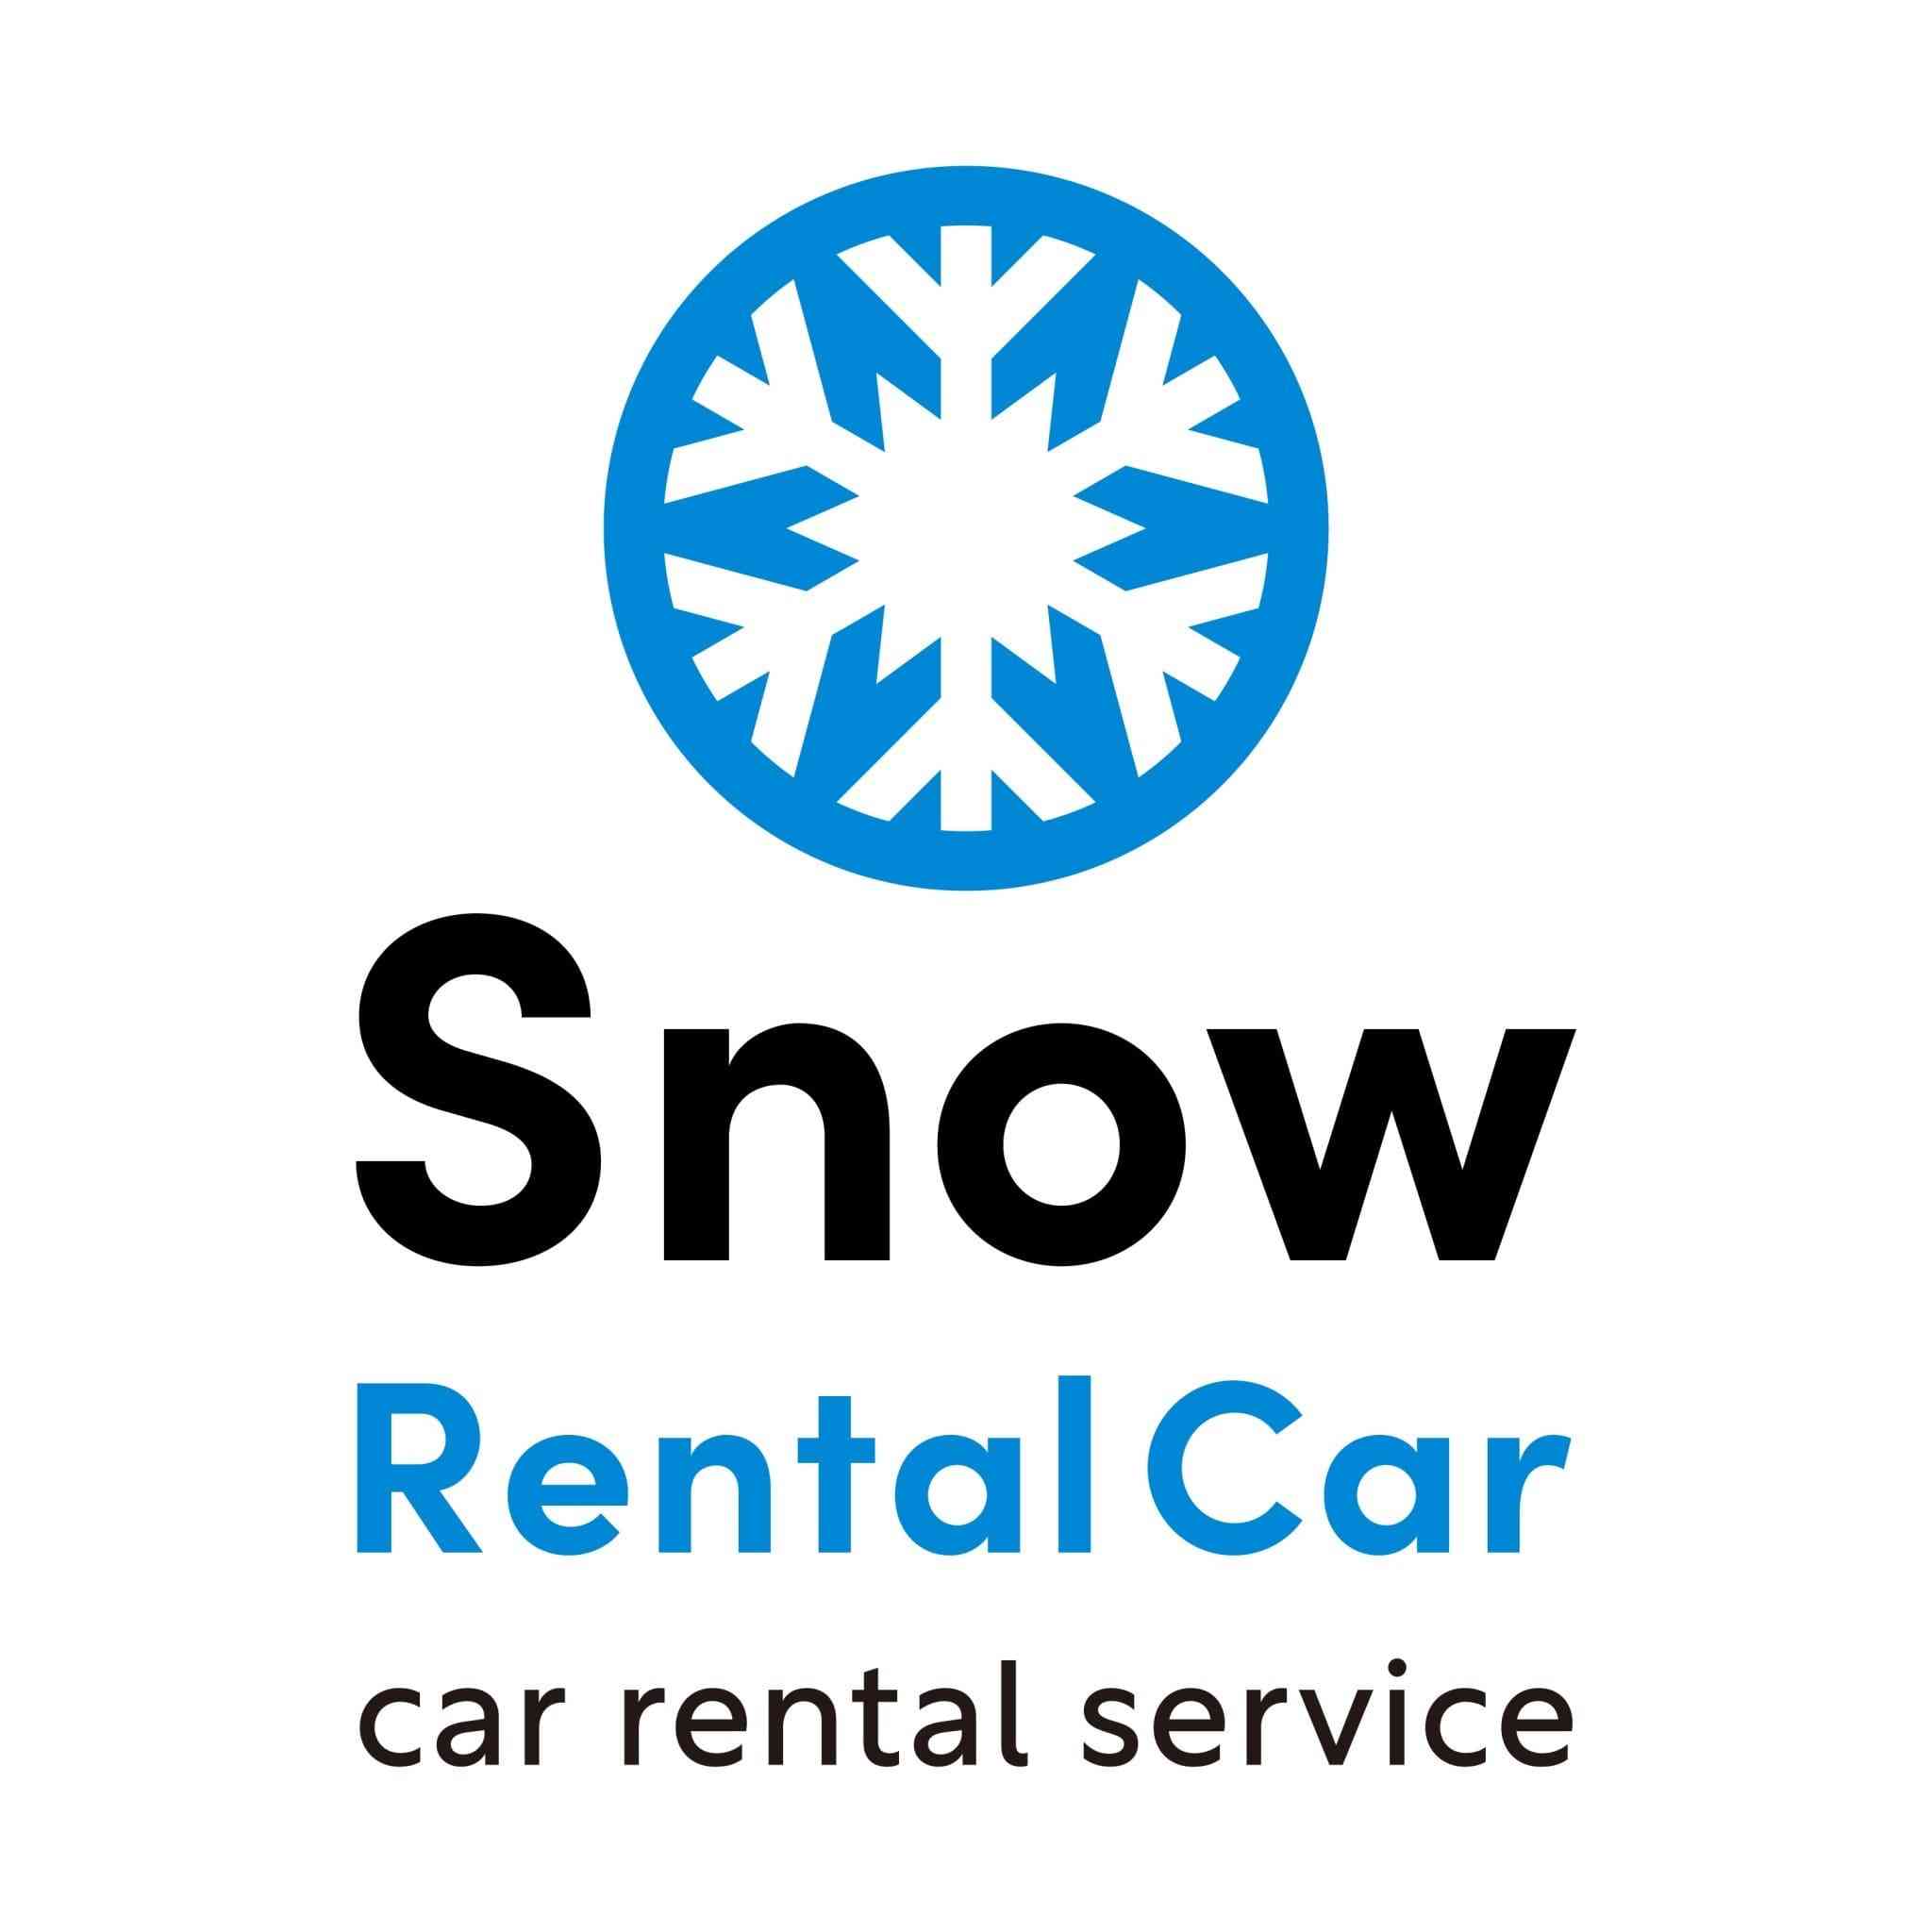 Snow Rental Car